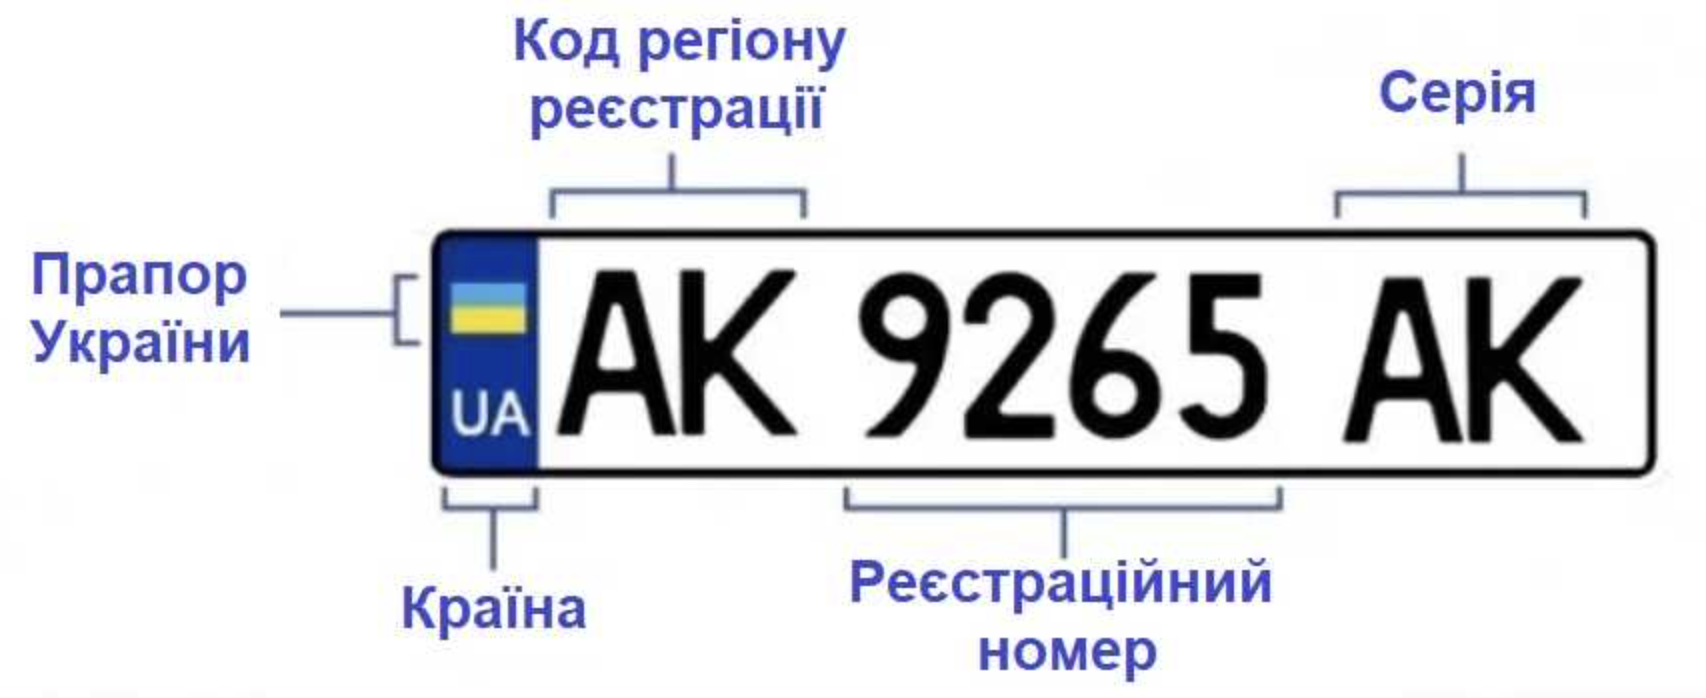 Вт номера украина. Обозначение автомобильных номеров Украины. Номерные знаки регионов Украины. Автомобильные номера Украины по регионам расшифровка. Номера Украины автомобильные.